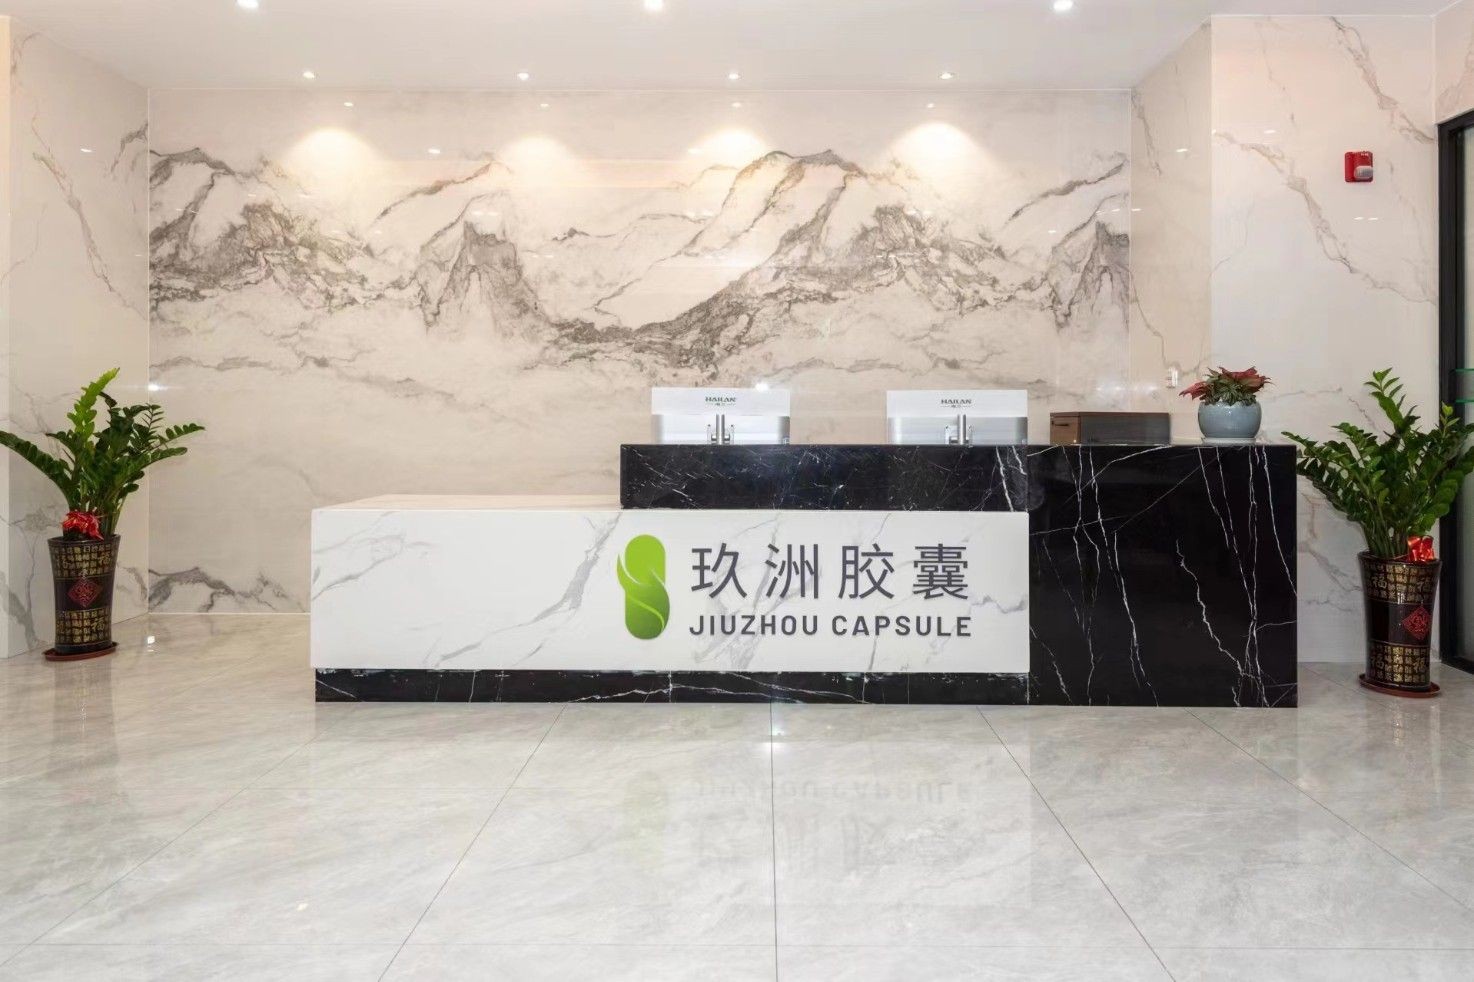 Jiuzhou Capsule Bio-Pharmaceuticals (Guangzhou) Co., Ltd